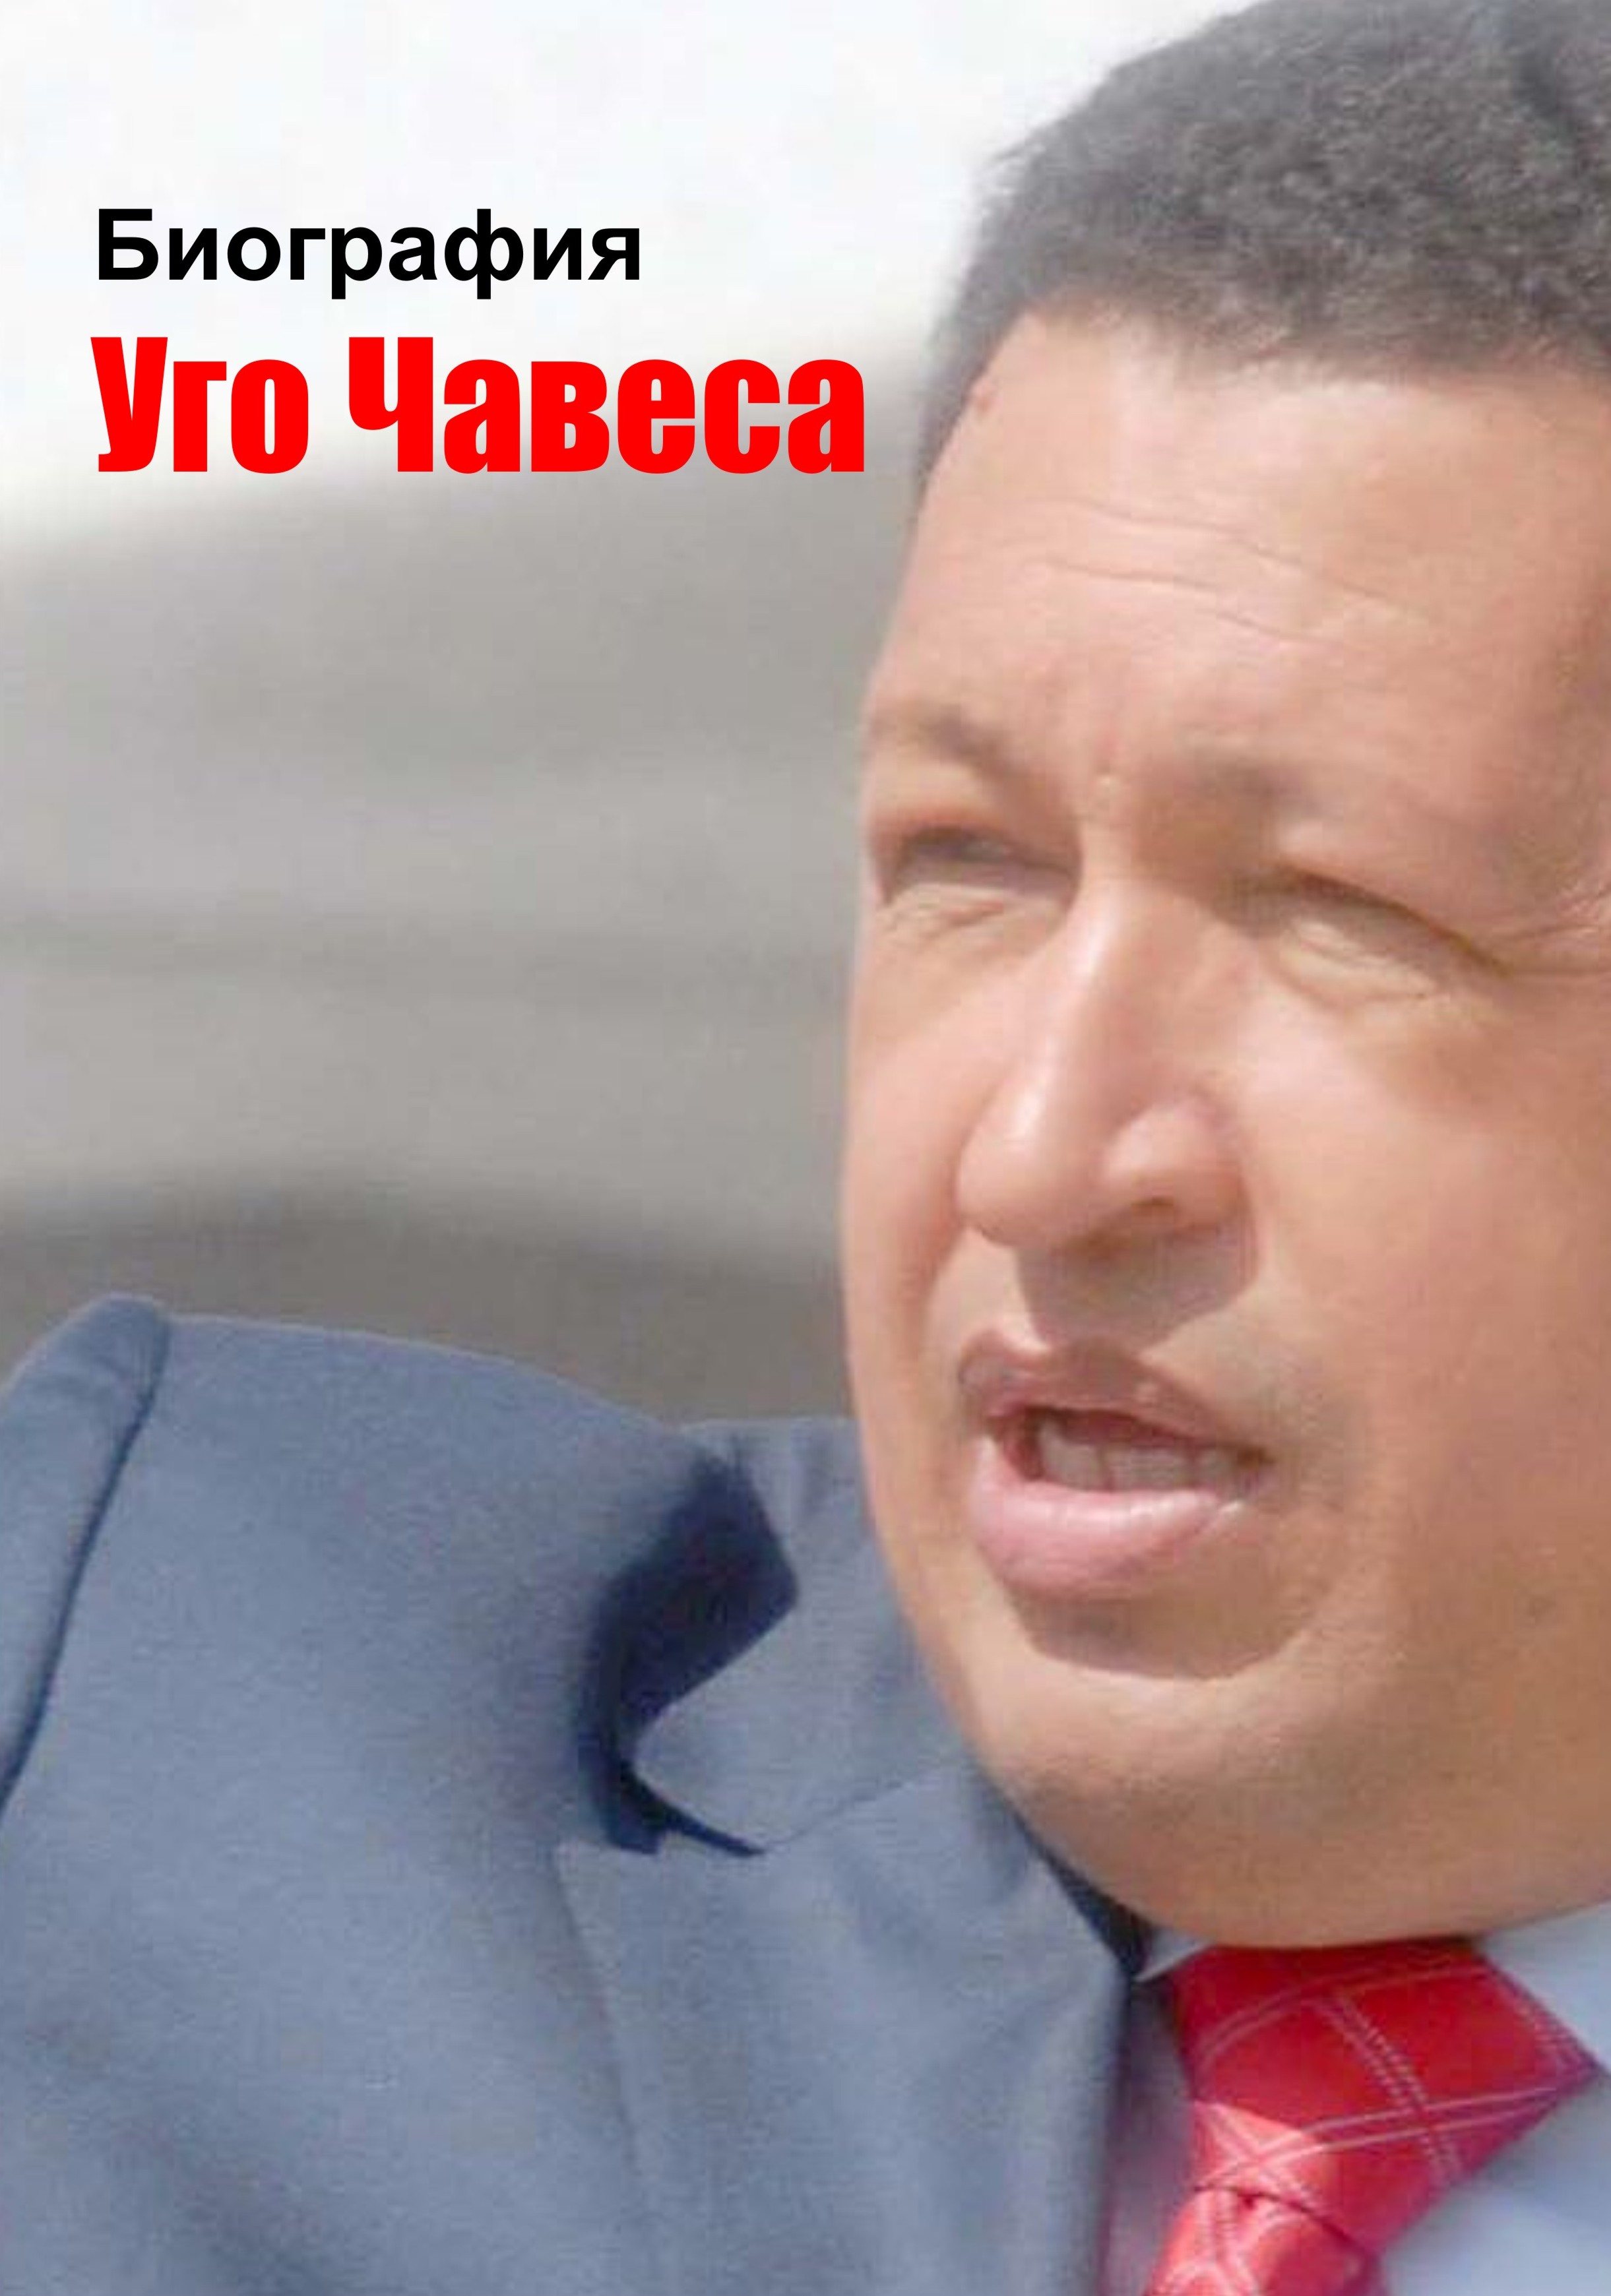 Книга Биография Уго Чавеса из серии , созданная Илья Мельников, может относится к жанру Биографии и Мемуары. Стоимость электронной книги Биография Уго Чавеса с идентификатором 4992191 составляет 24.95 руб.